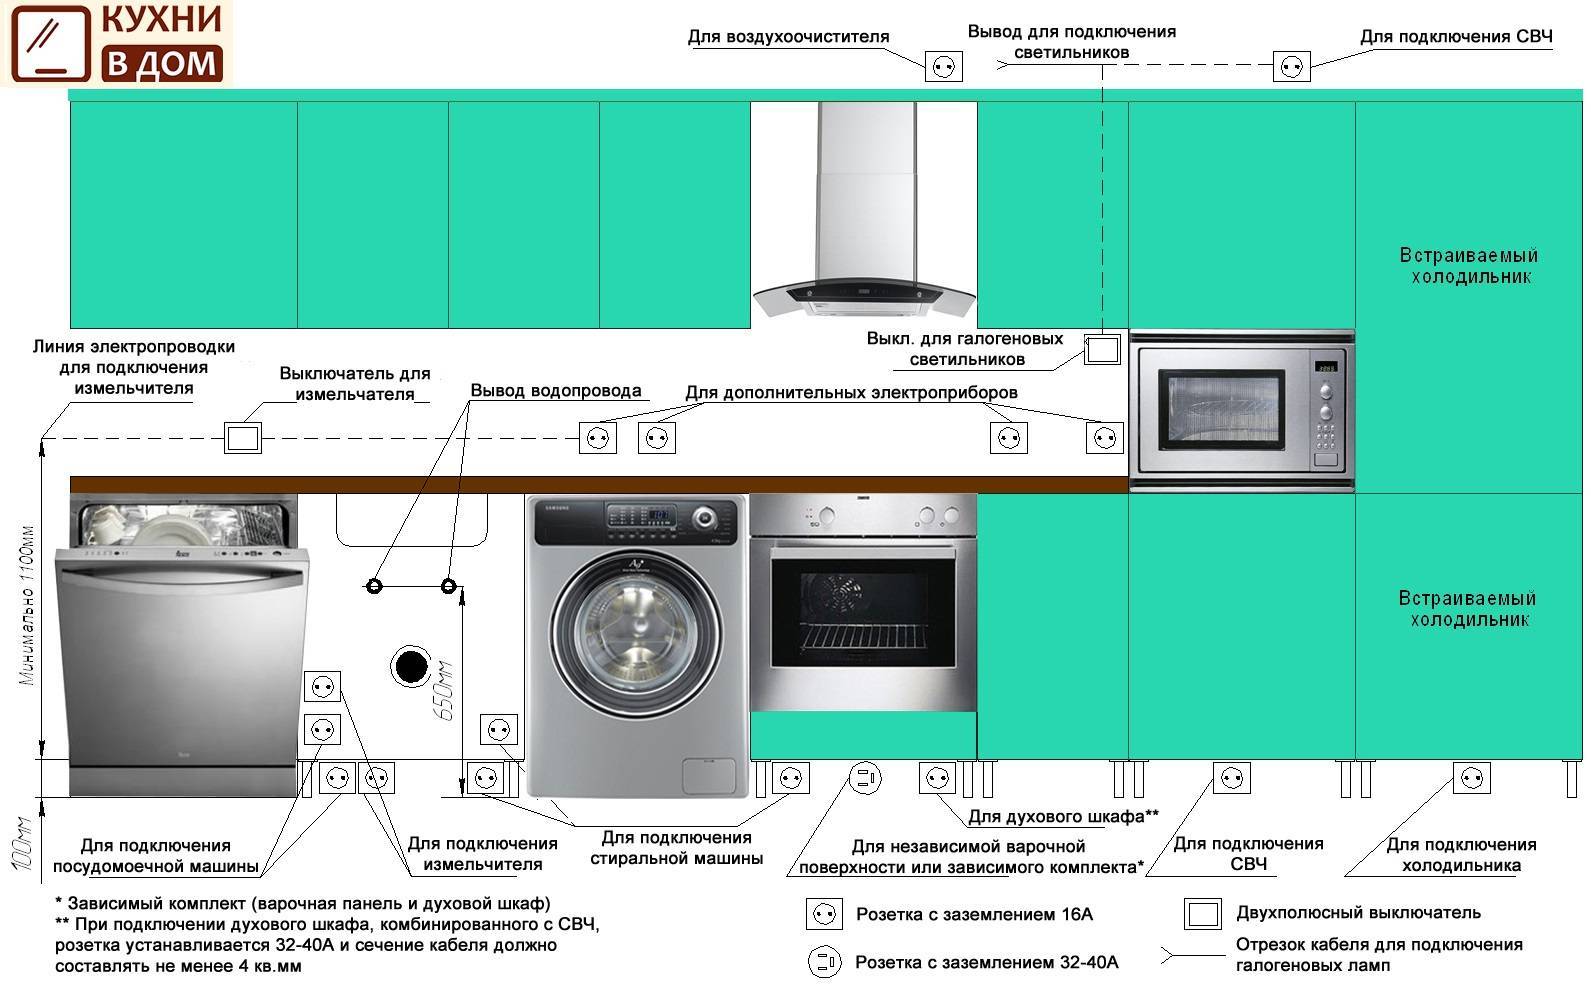 Установка розеток на кухне: необходимость и число, принципы размещения, особенности, инструкция по проводке и монтажу